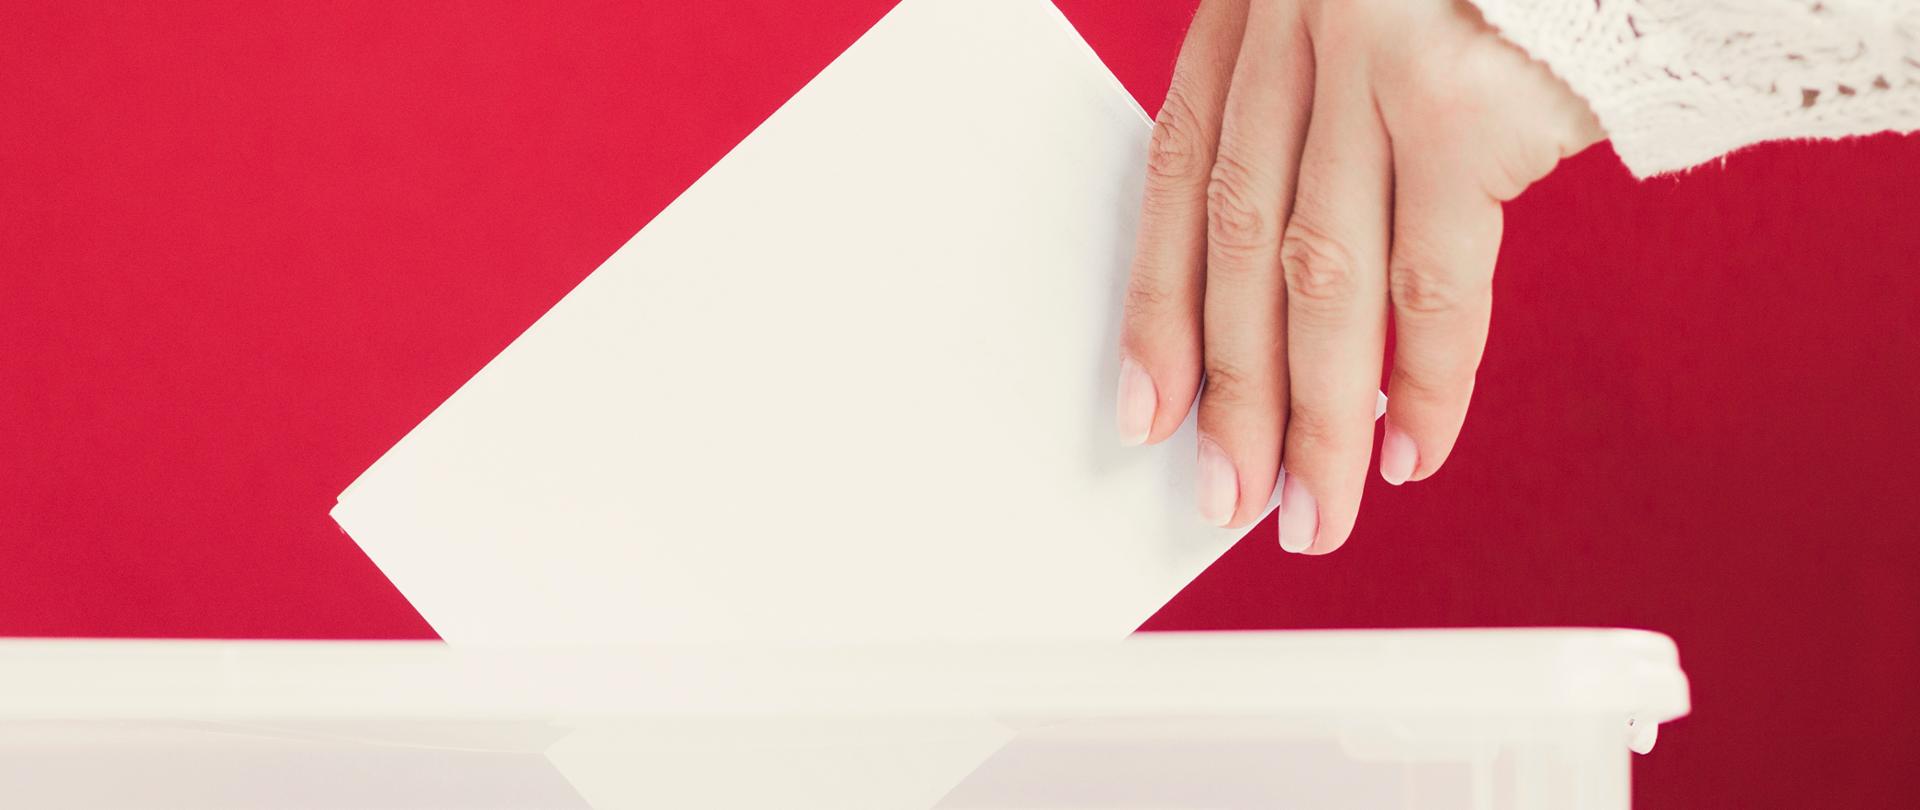 Zdjęcie przedstawia kobiecą dłoń, która wrzuca białą kartkę do urny.